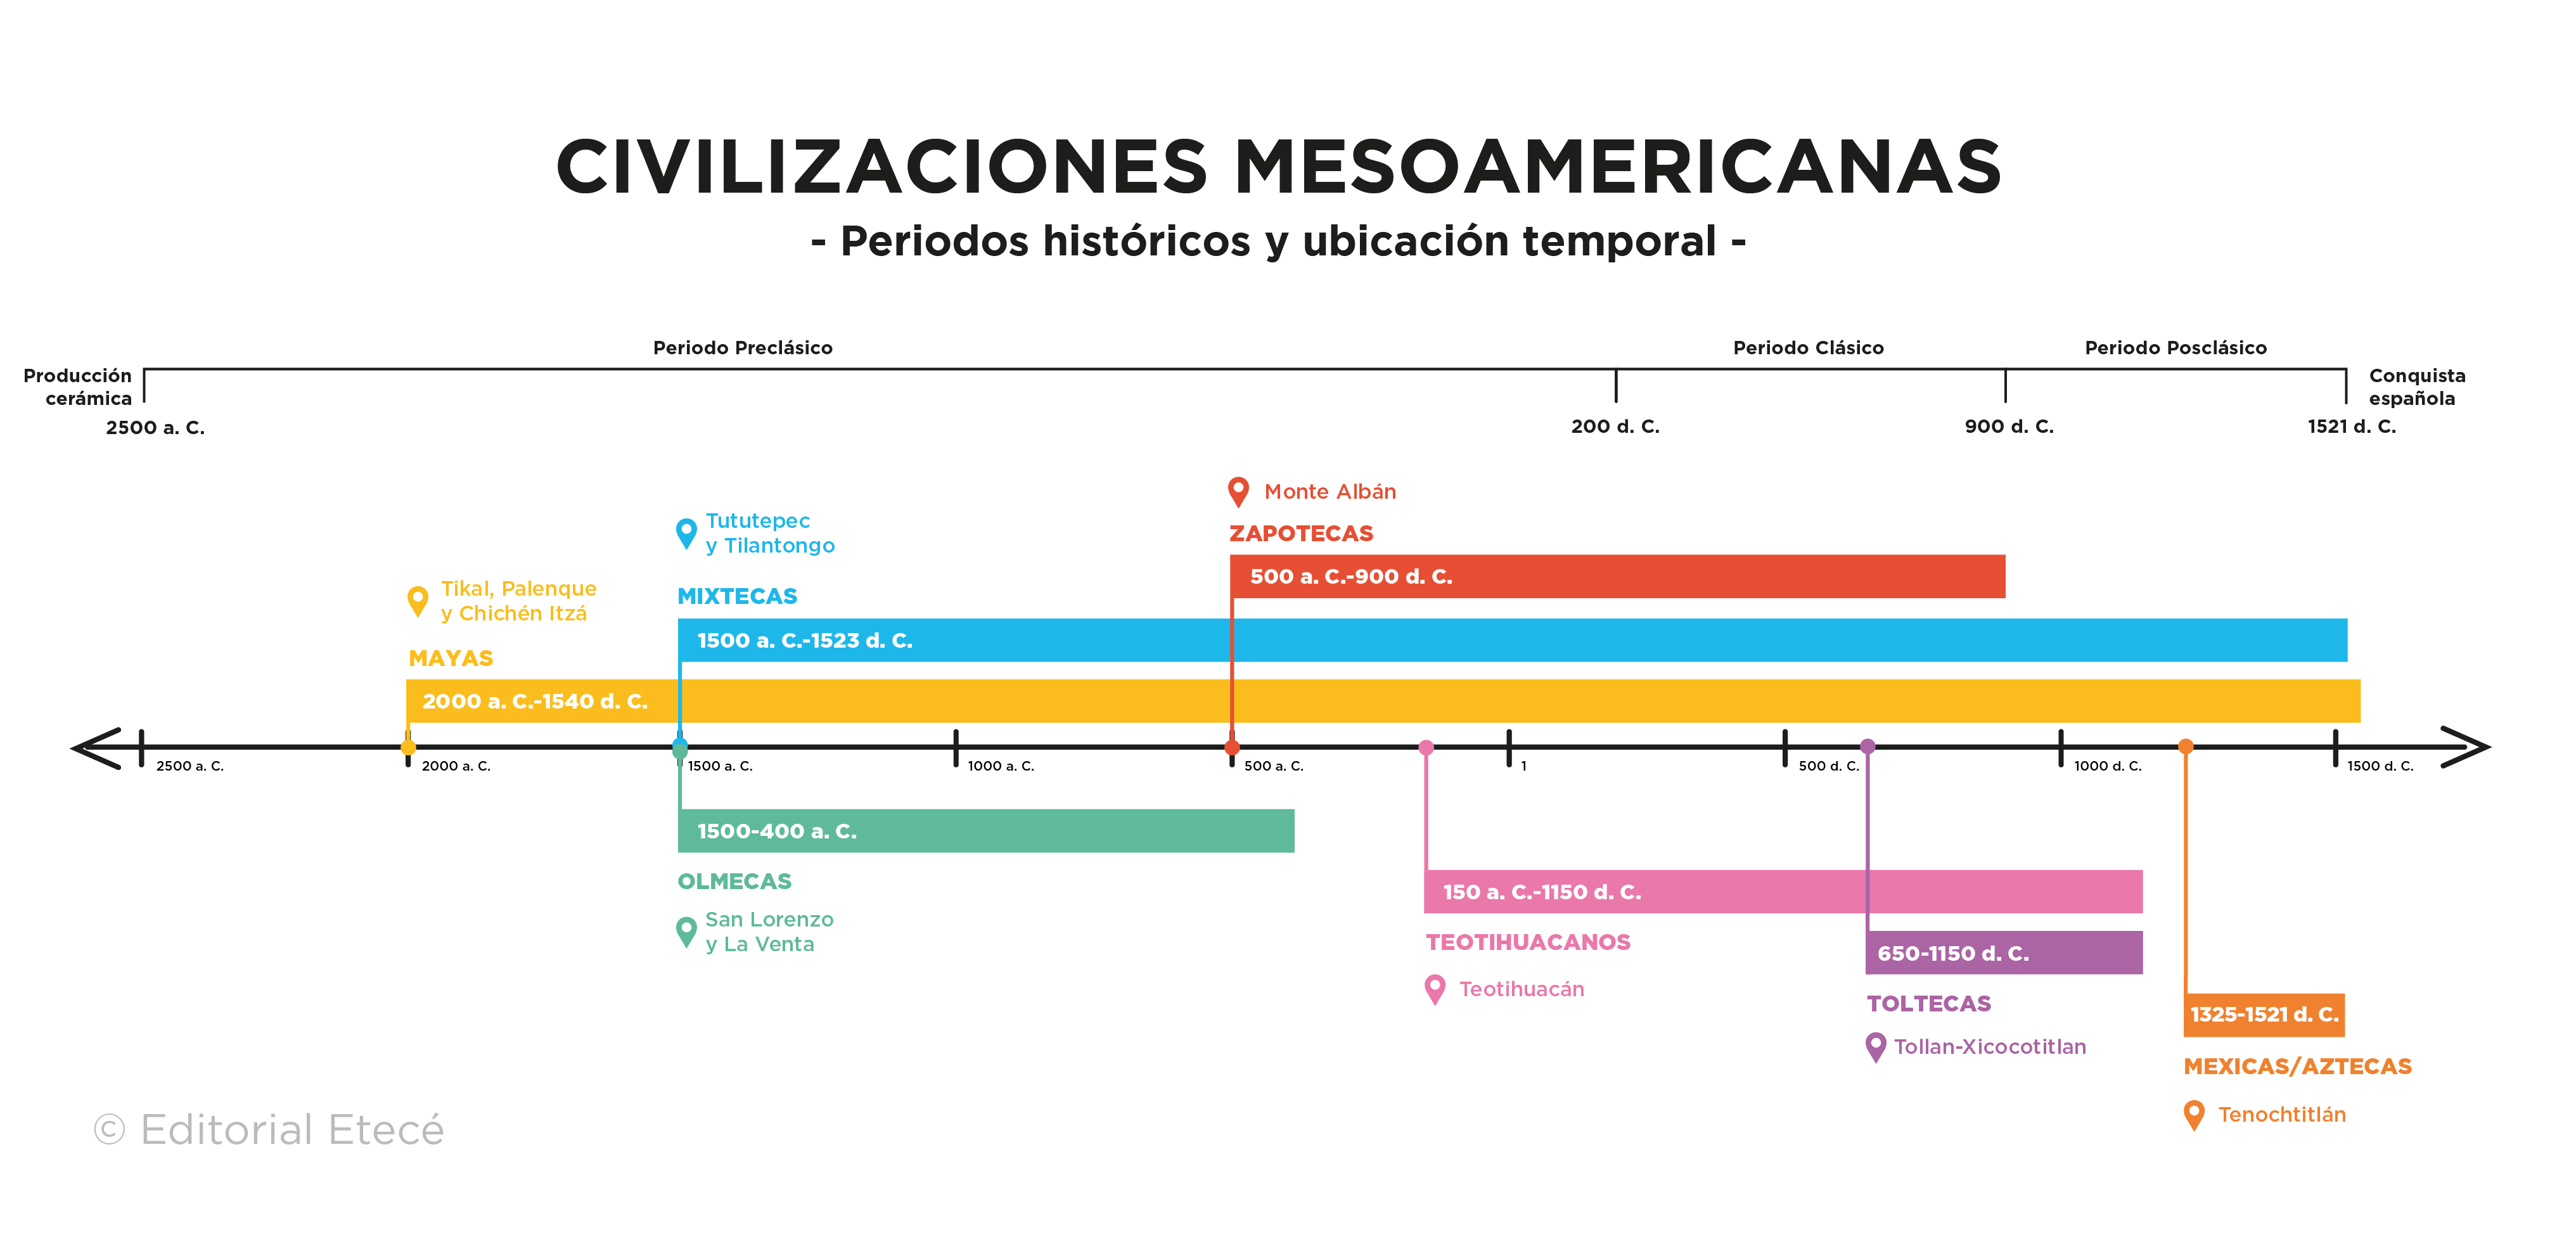 mar Mediterráneo vesícula biliar latín Civilizaciones mesoamericanas: períodos y características